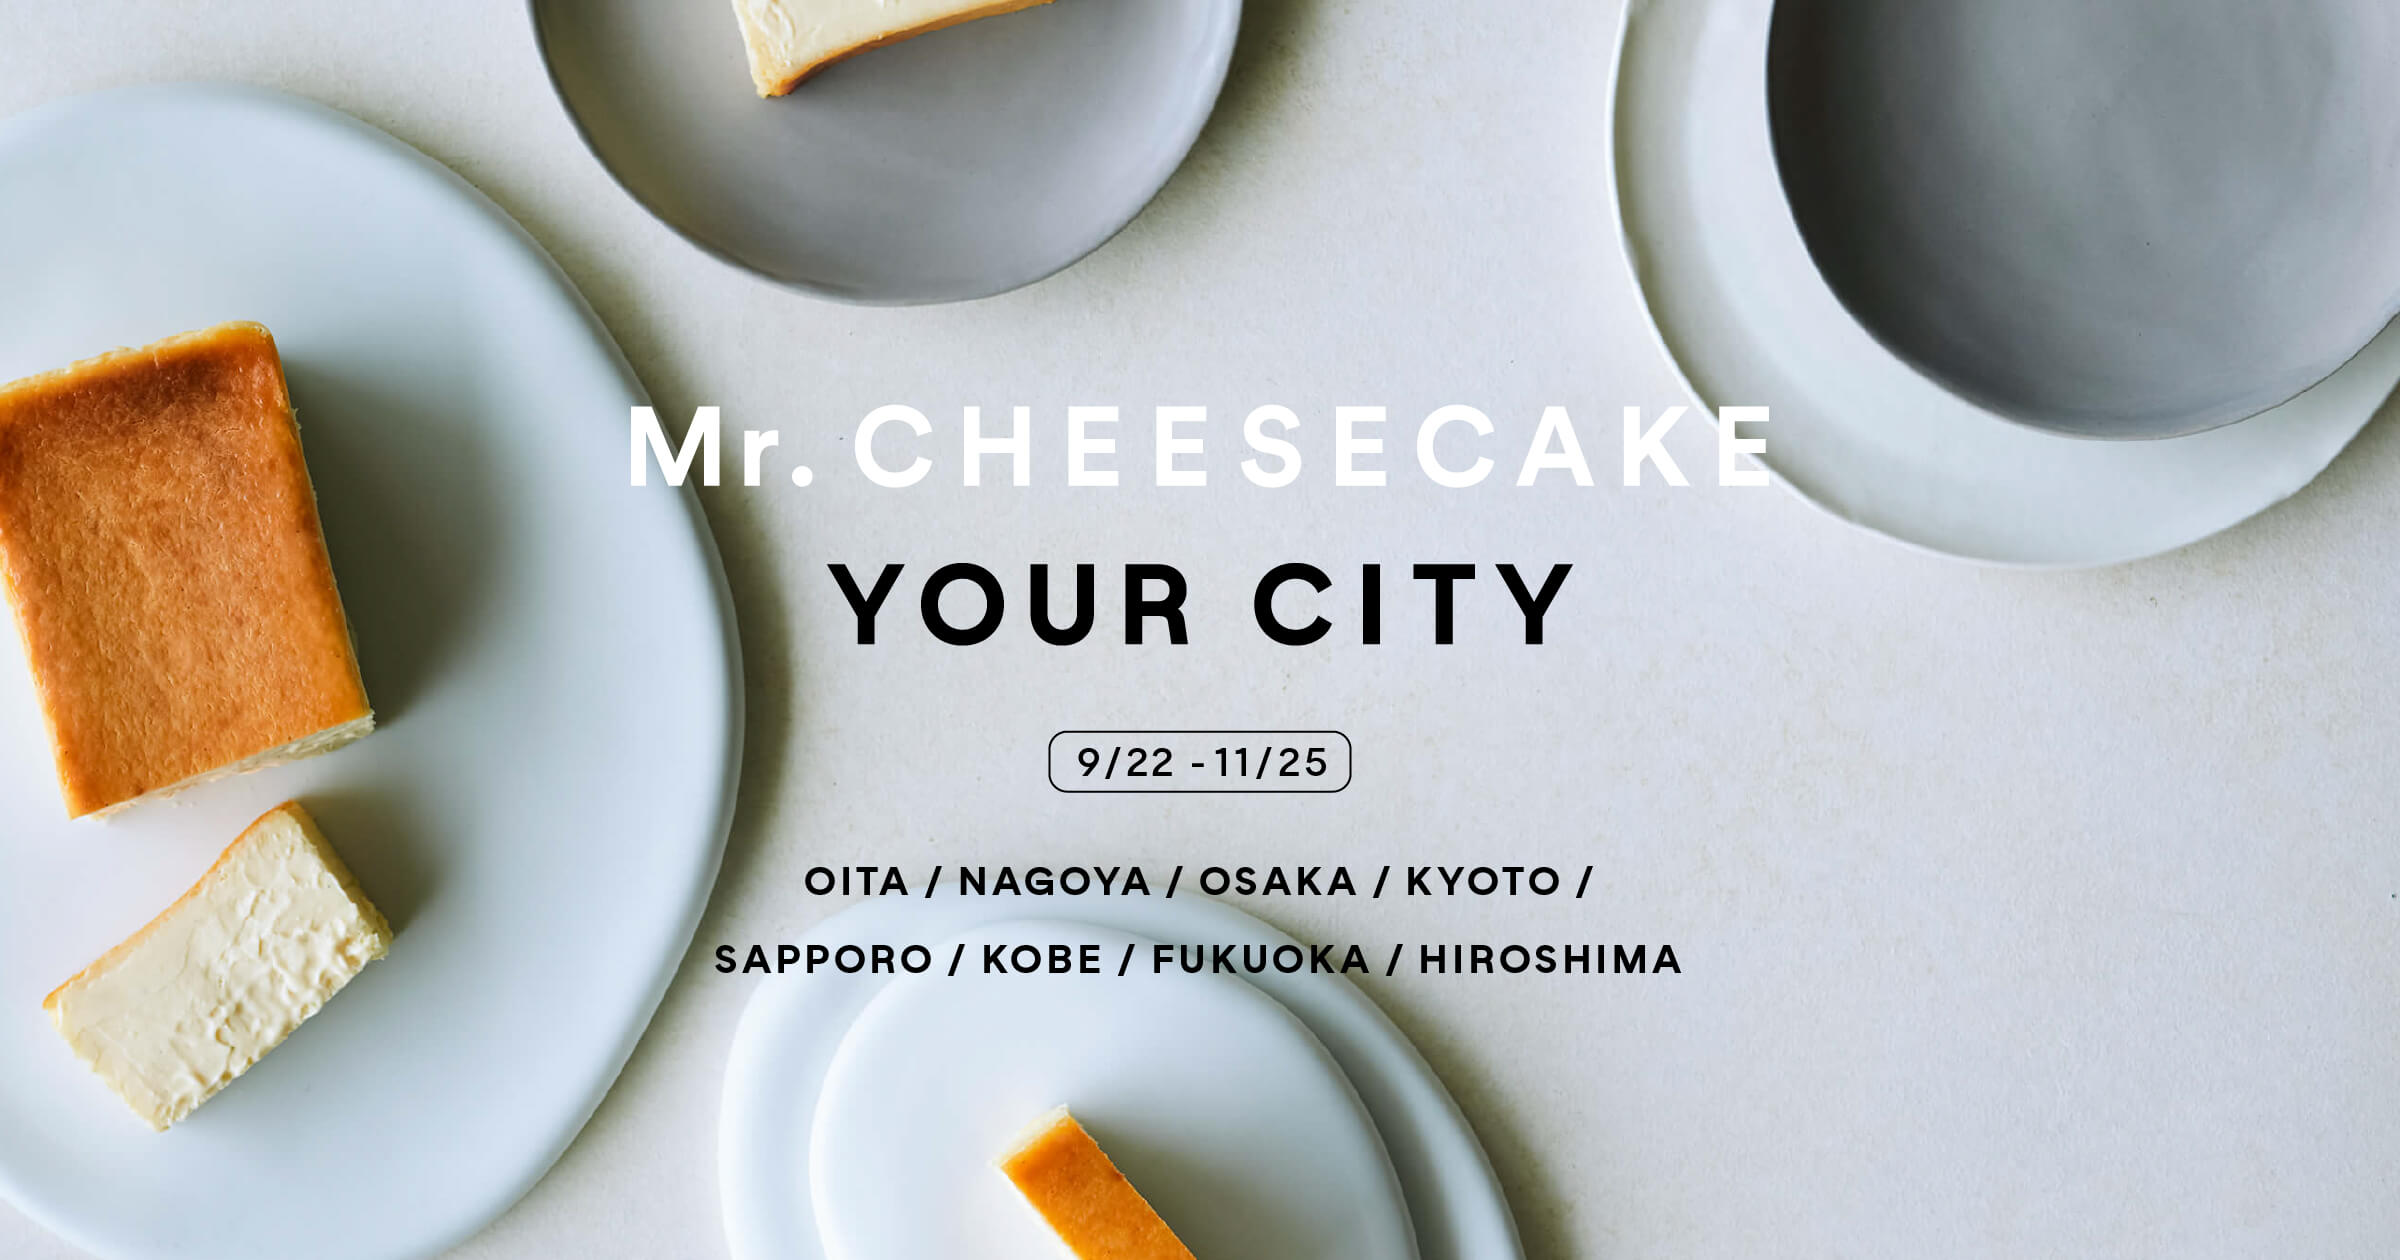 “人生最高のチーズケーキ”と話題の「Mr. CHEESECAKE」のポップアップストアがオープン！2021年9月中旬より、全国8箇所で「Mr. CHEESECAKE YOUR CITY」を順次開催のサブ画像1